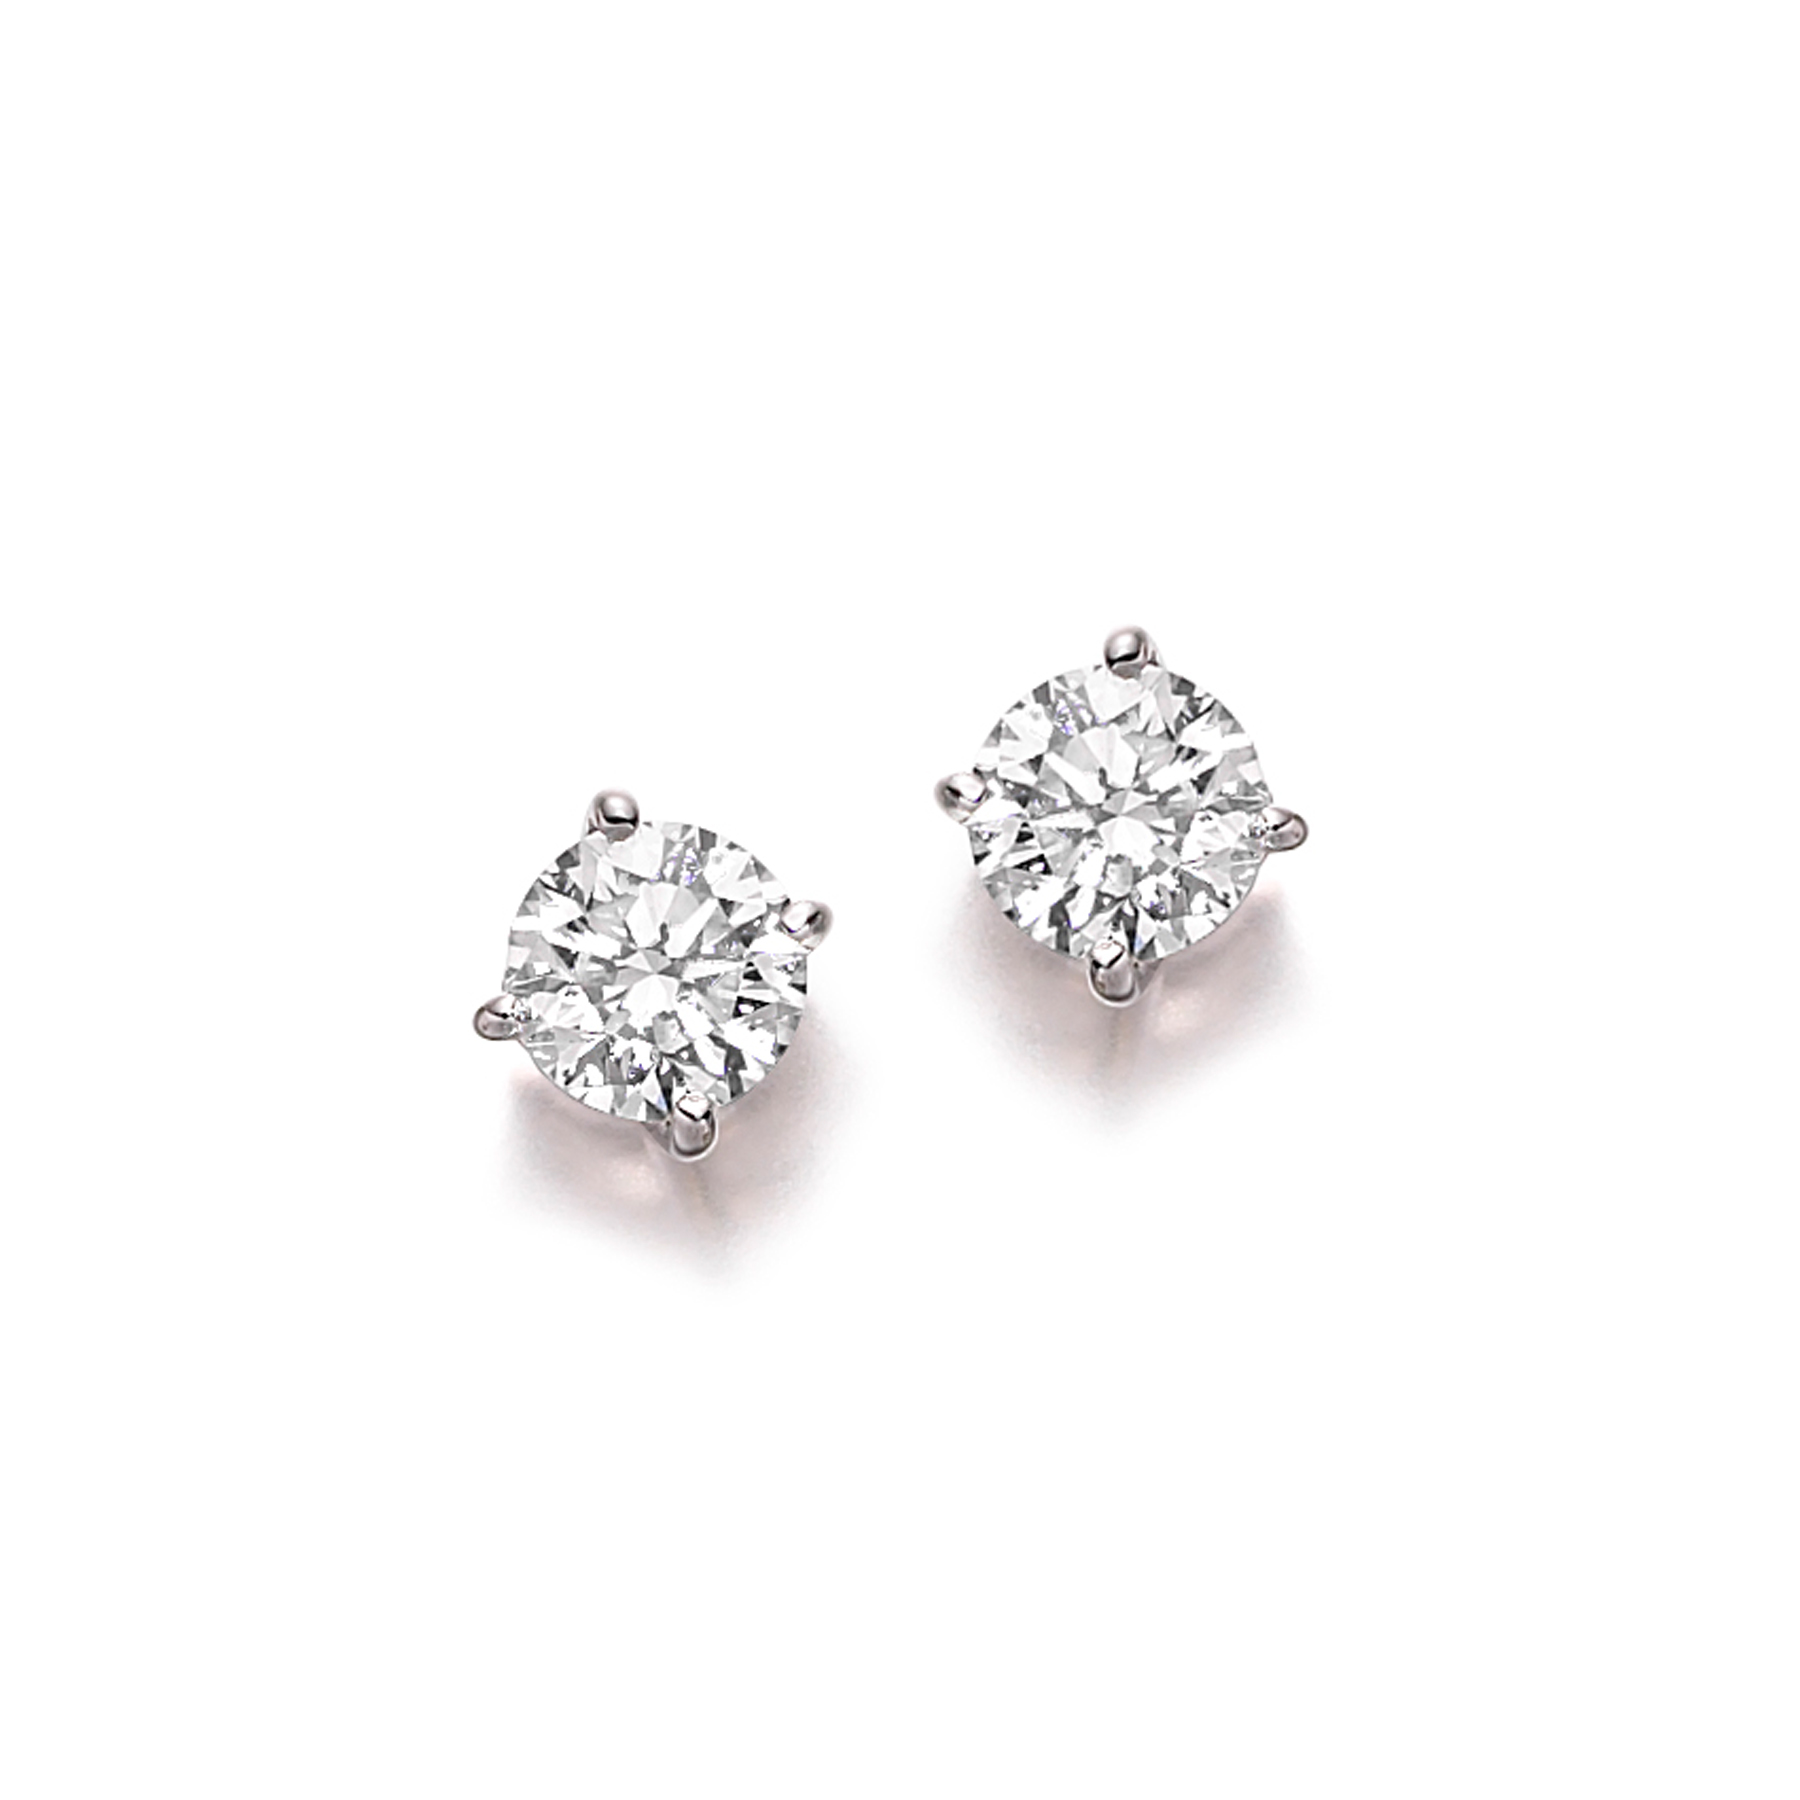 Diamond rub set stud earrings